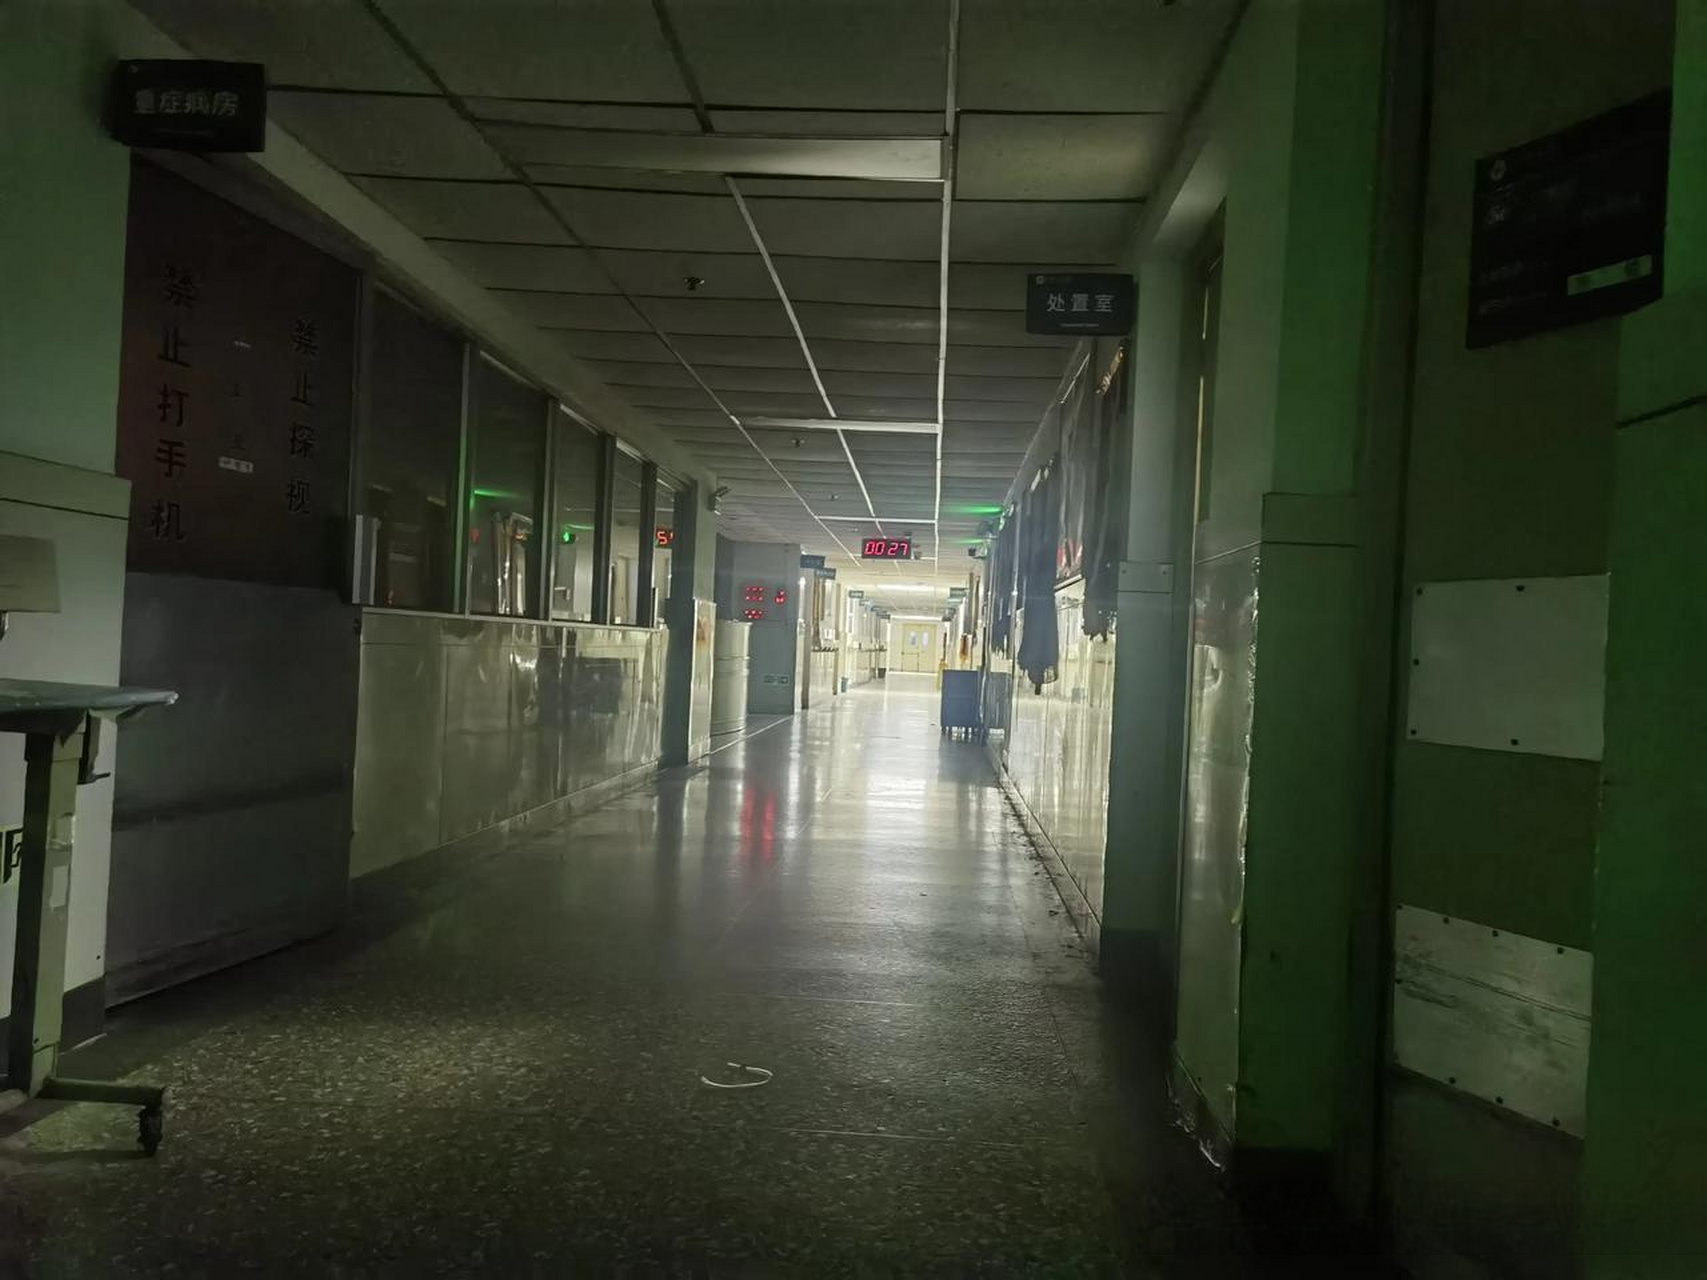 这是凌晨一点钟医院病房的走廊,母亲睡在病床,我陪护着,自己睡在临时